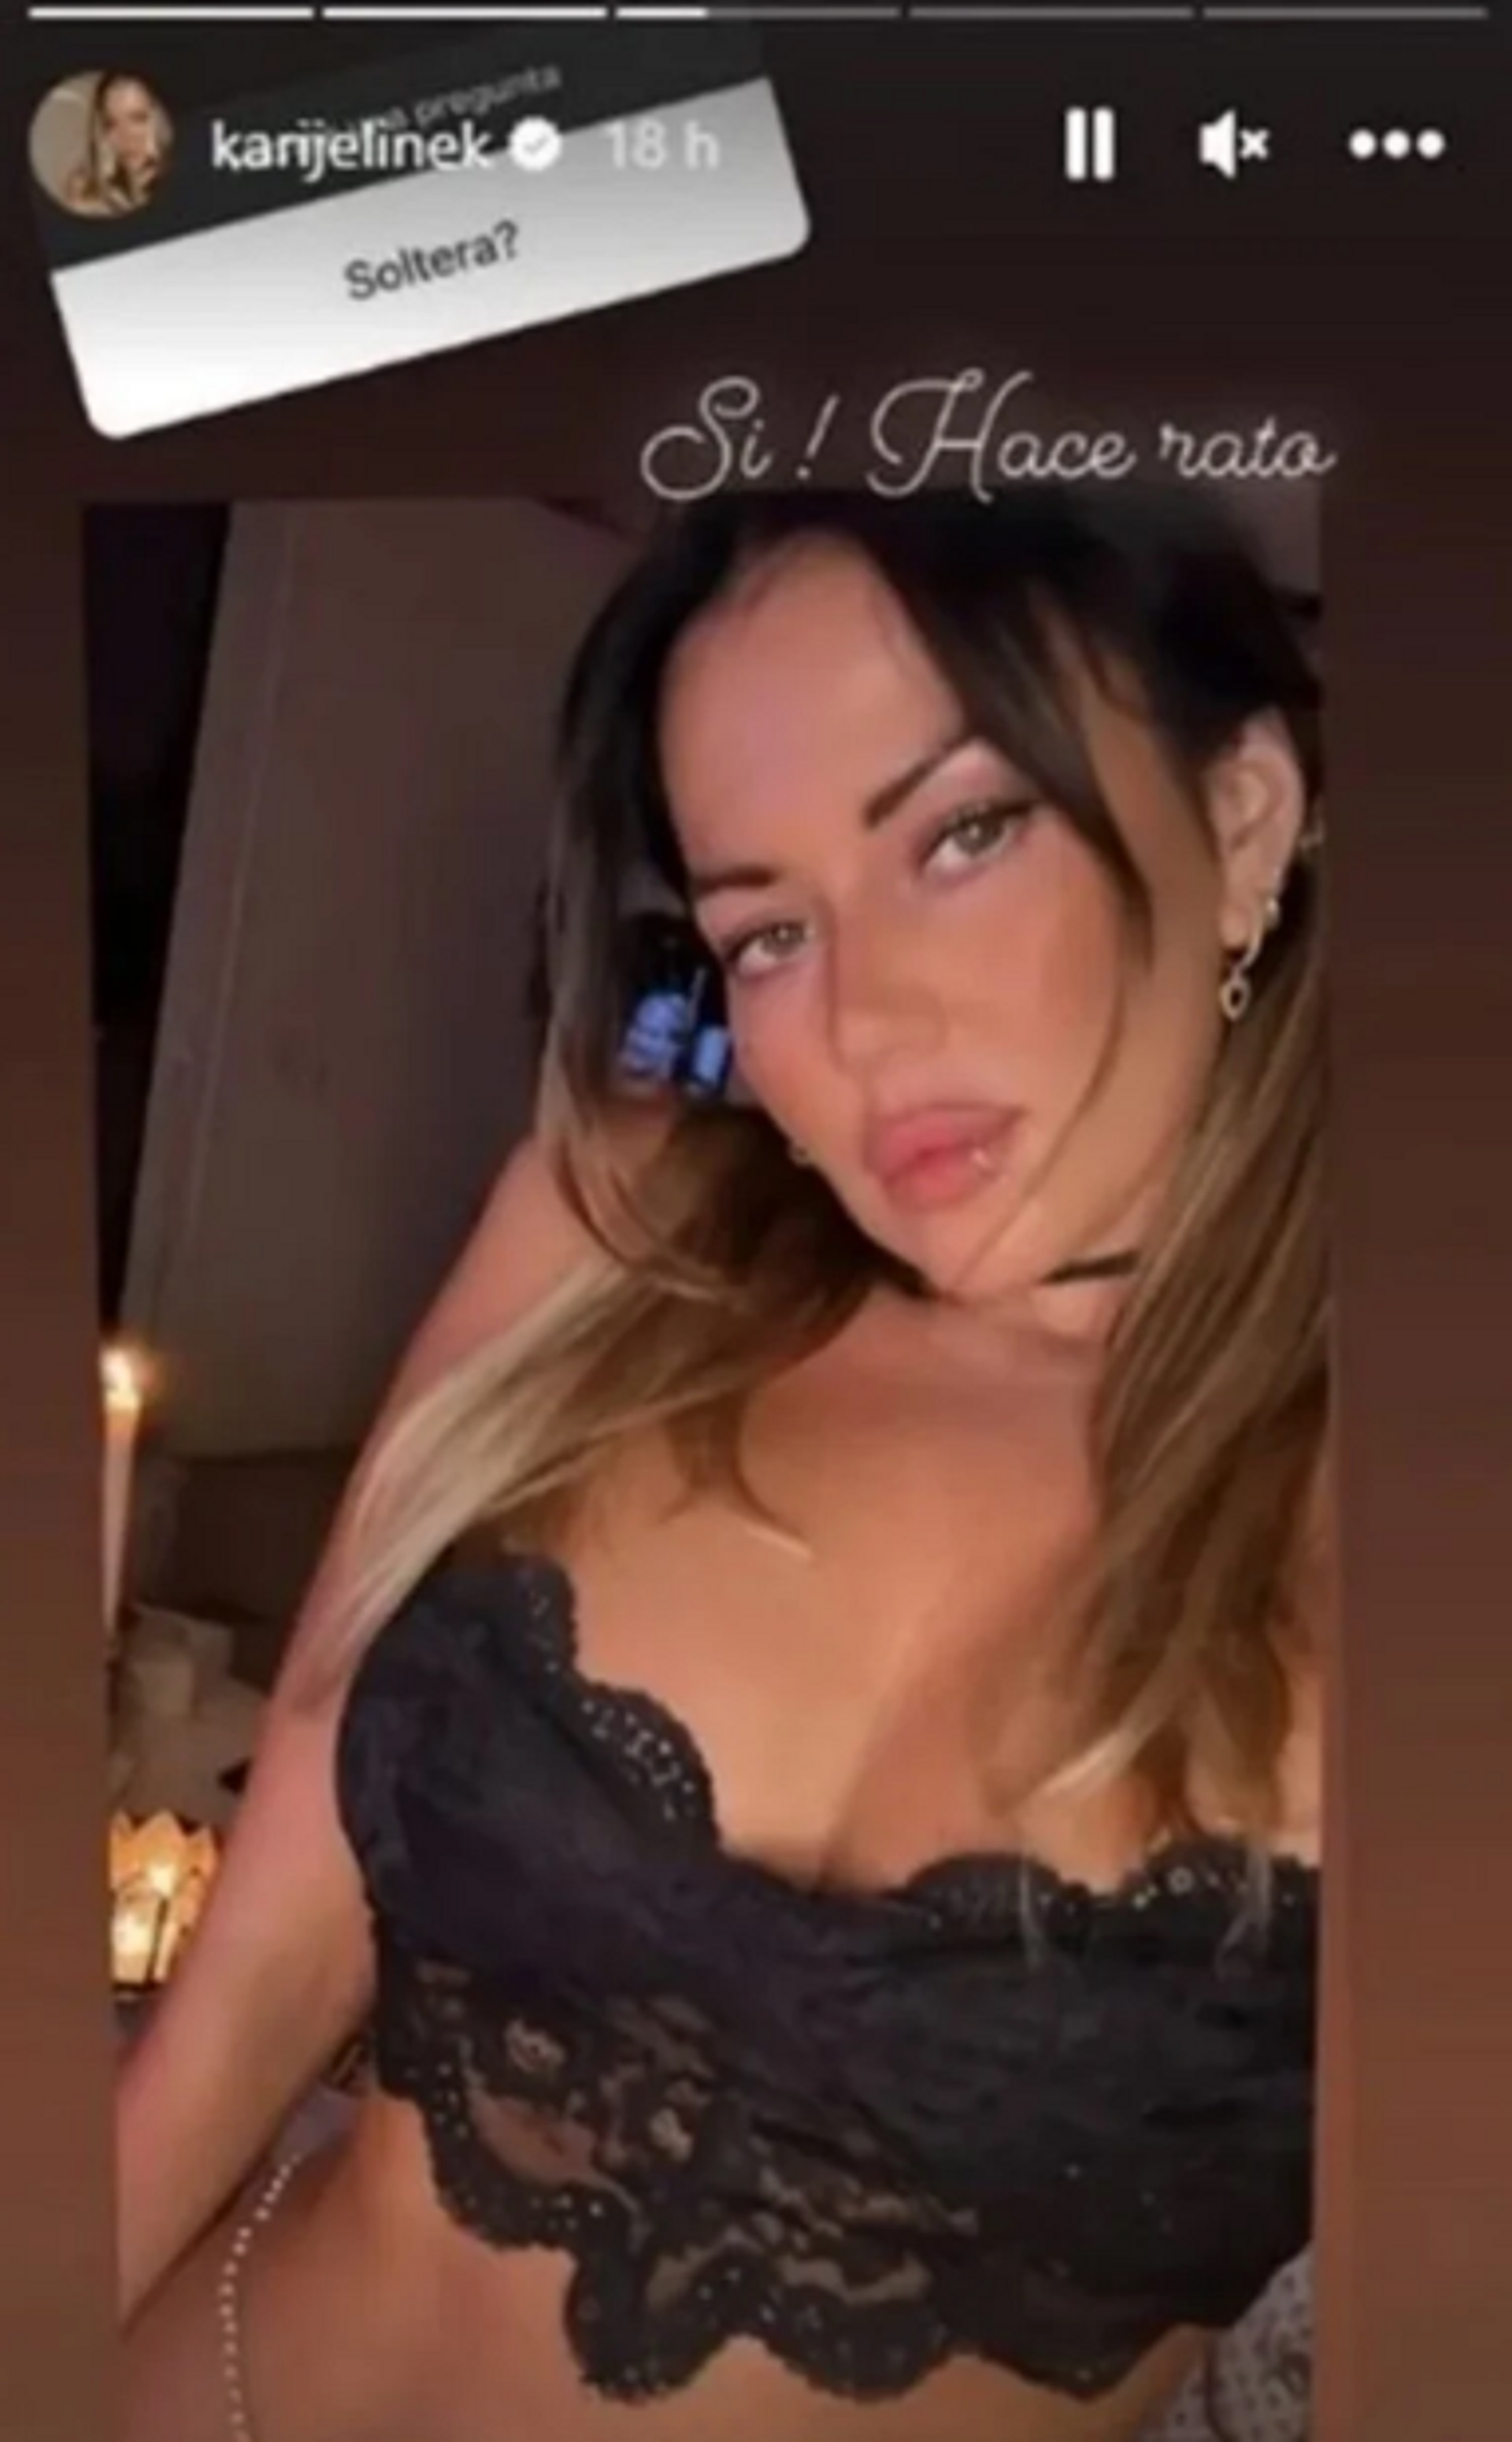 Karina Jelinek anunció en sus redes sociales su separación de Flor Parise (Instagram)